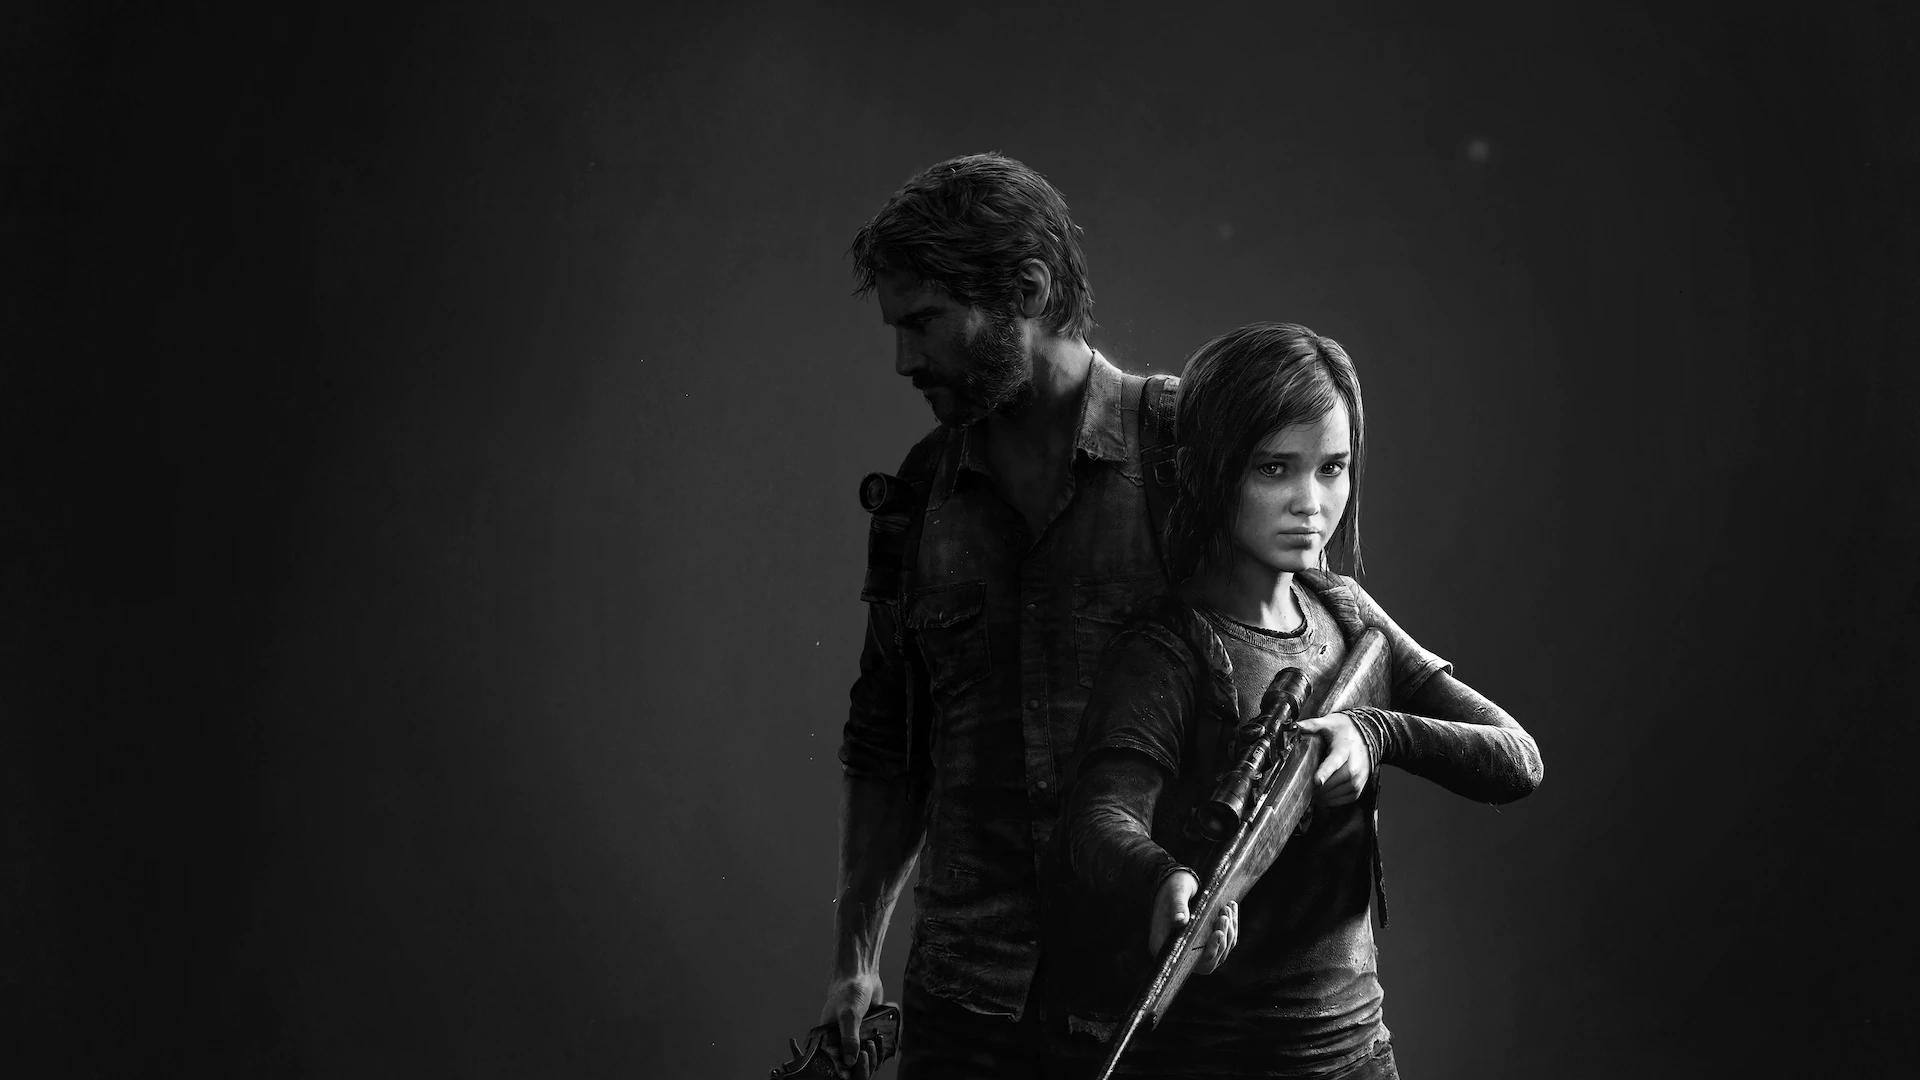 Download Ellie's Brave Struggle in The Last Of Us Wallpaper